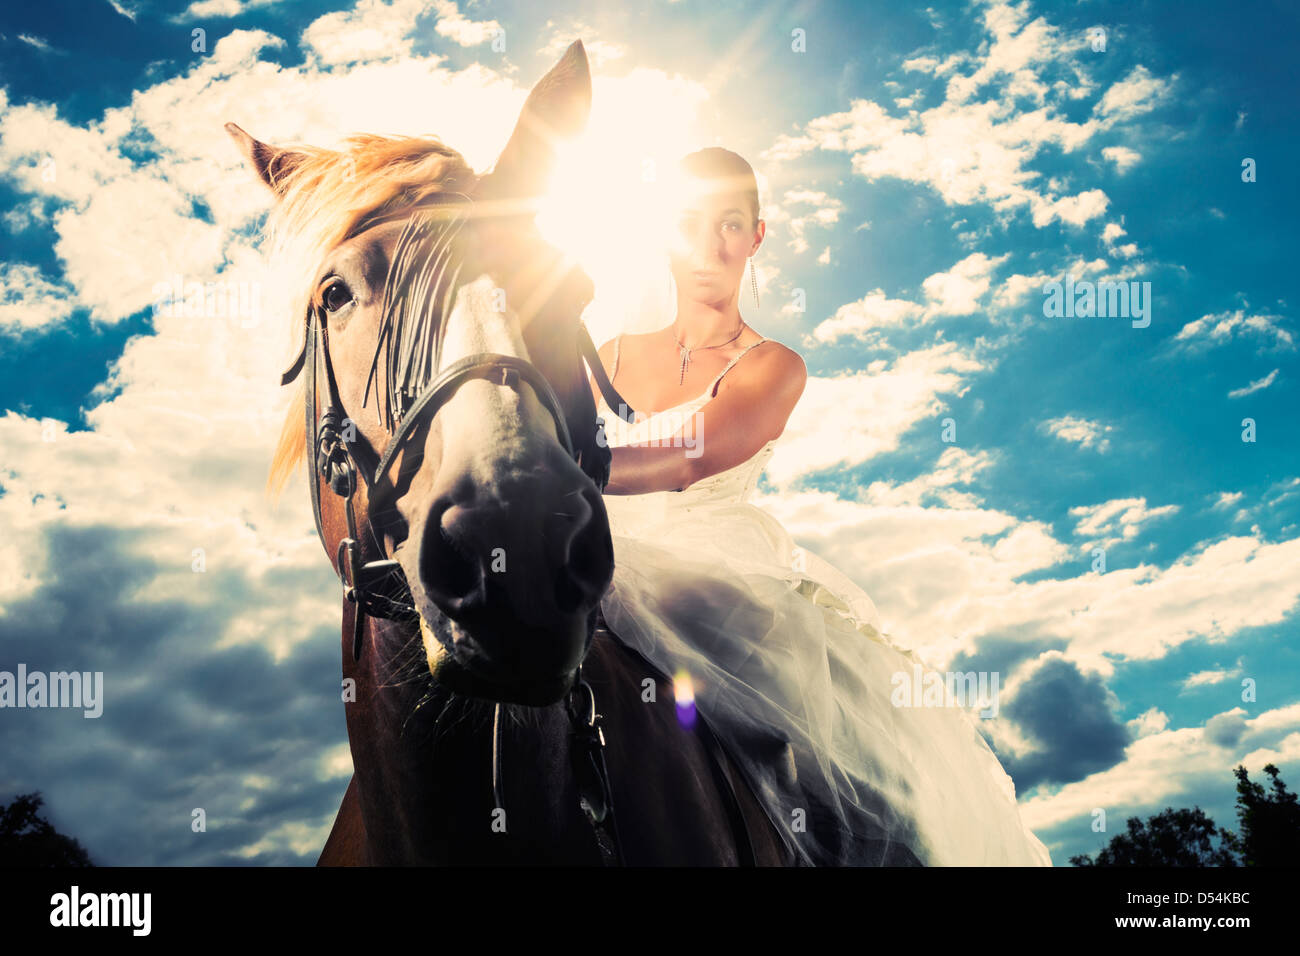 Junge Braut im Hochzeitskleid Reiten ein Pferd, hinterleuchtete Bild, träumerische Stimmung Stockfoto